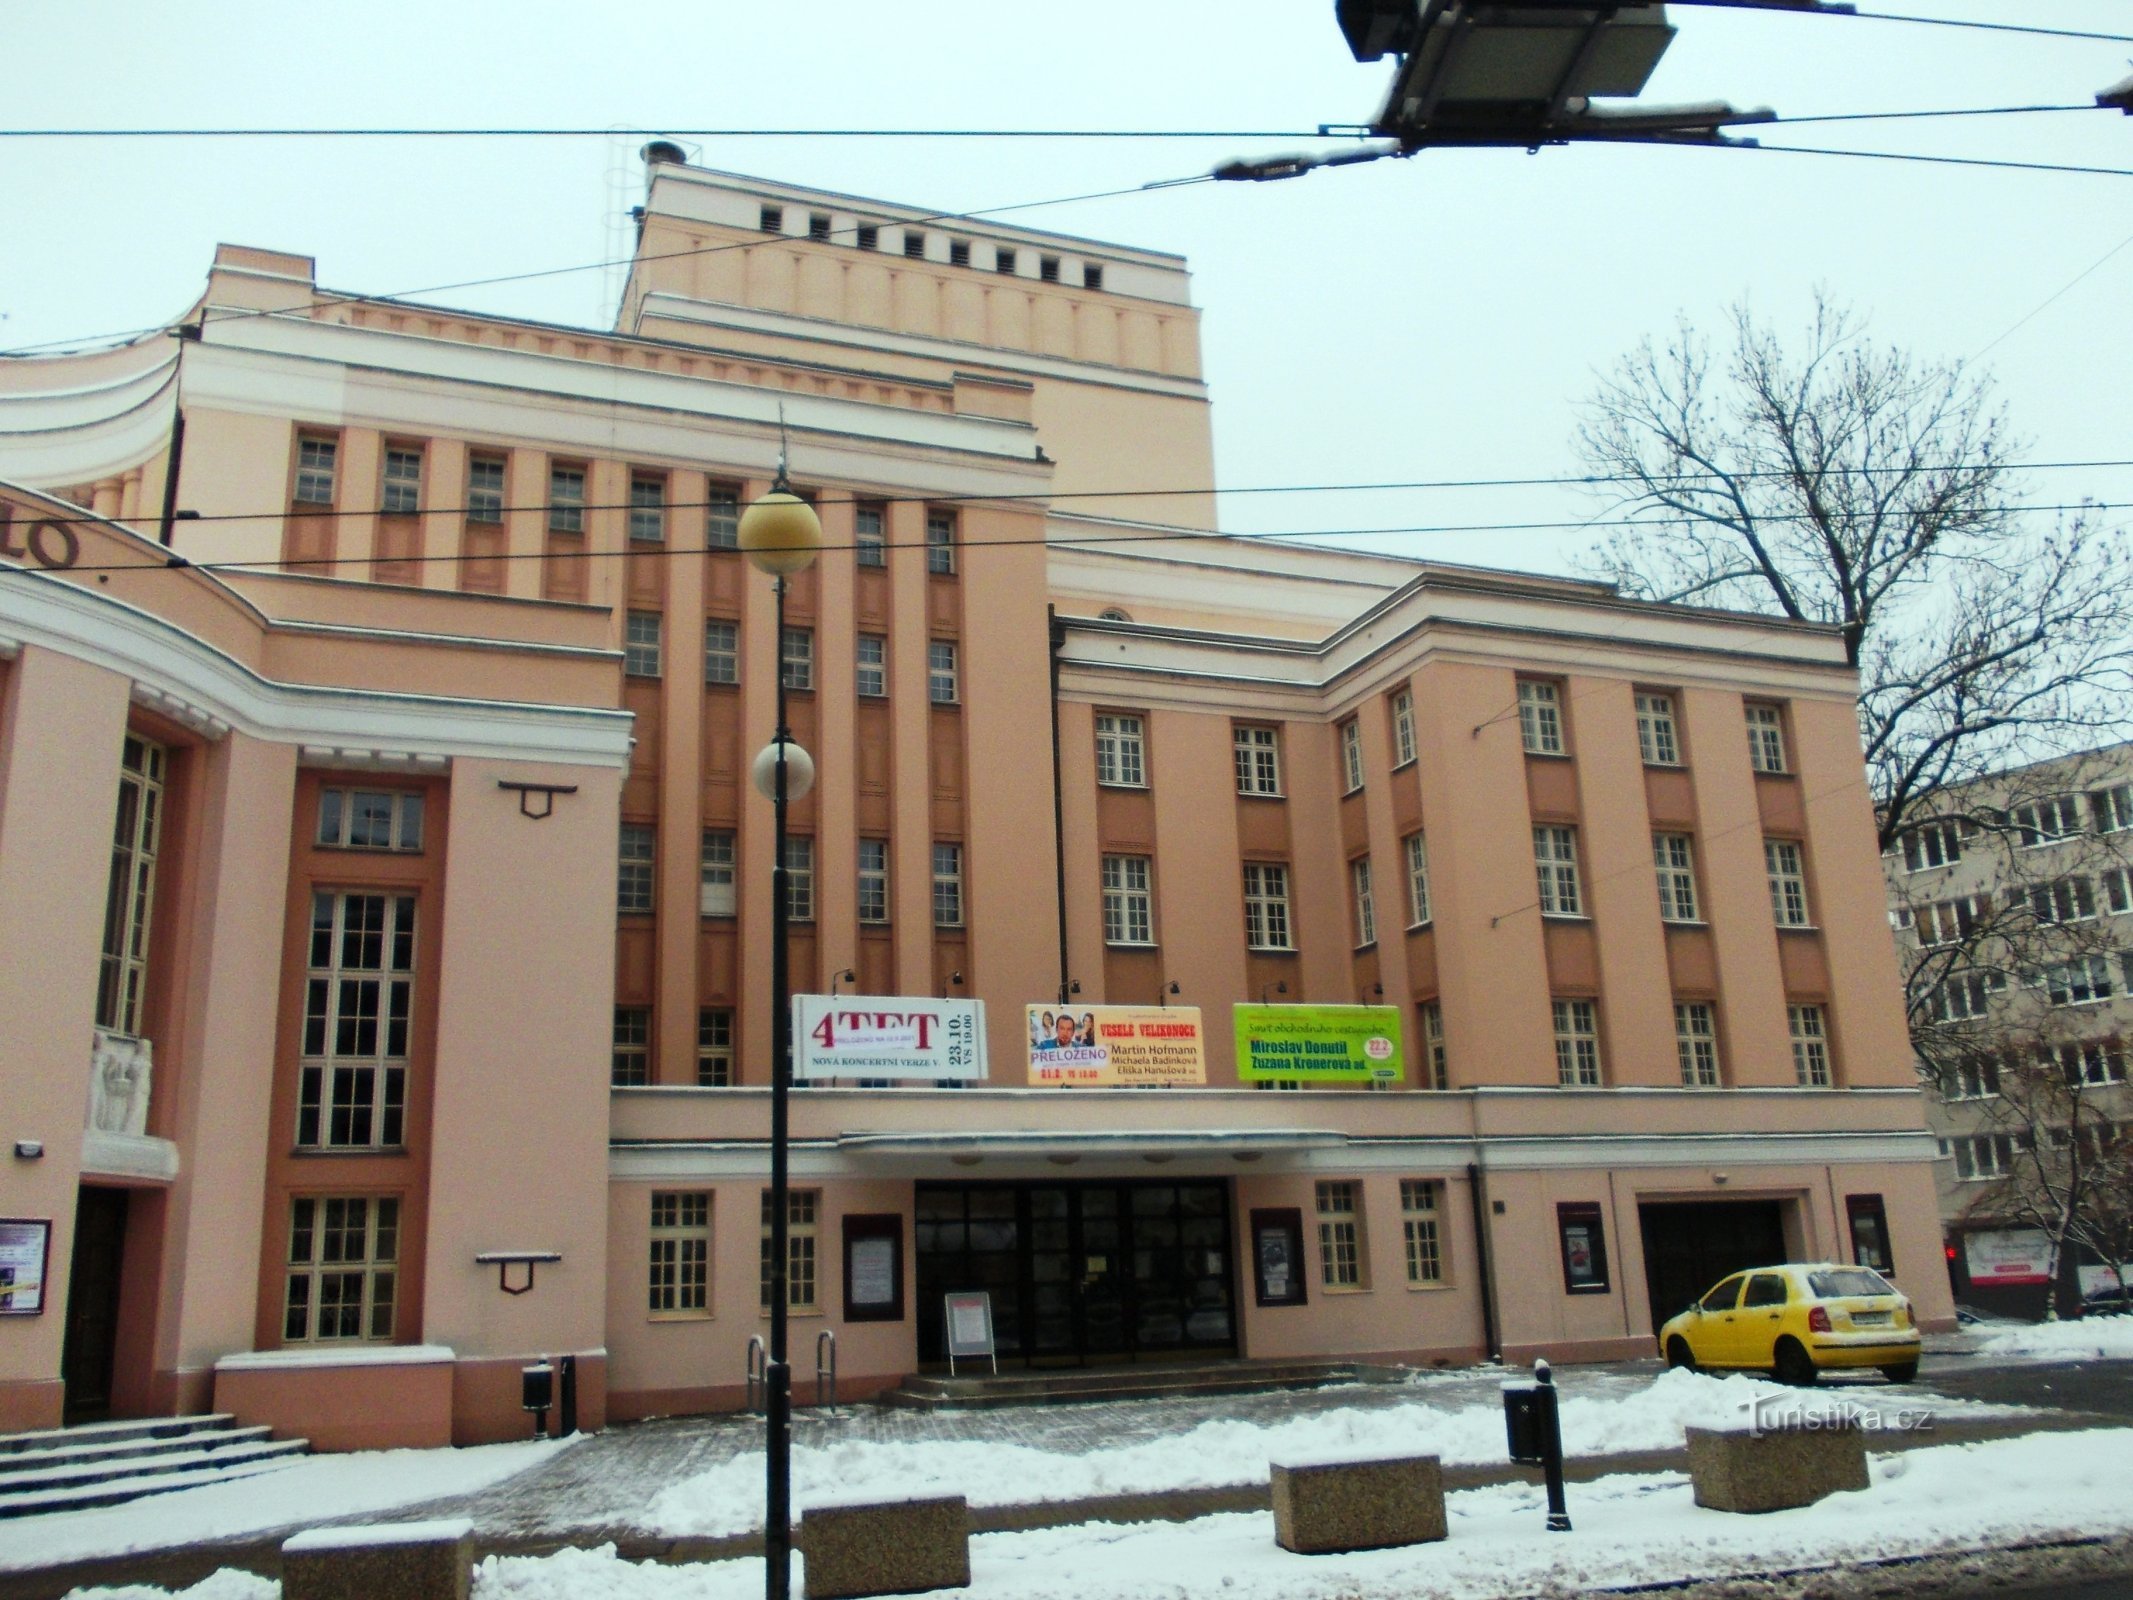 Krušnohorské teater - dets opførelse fandt sted mellem 1921 og 1924